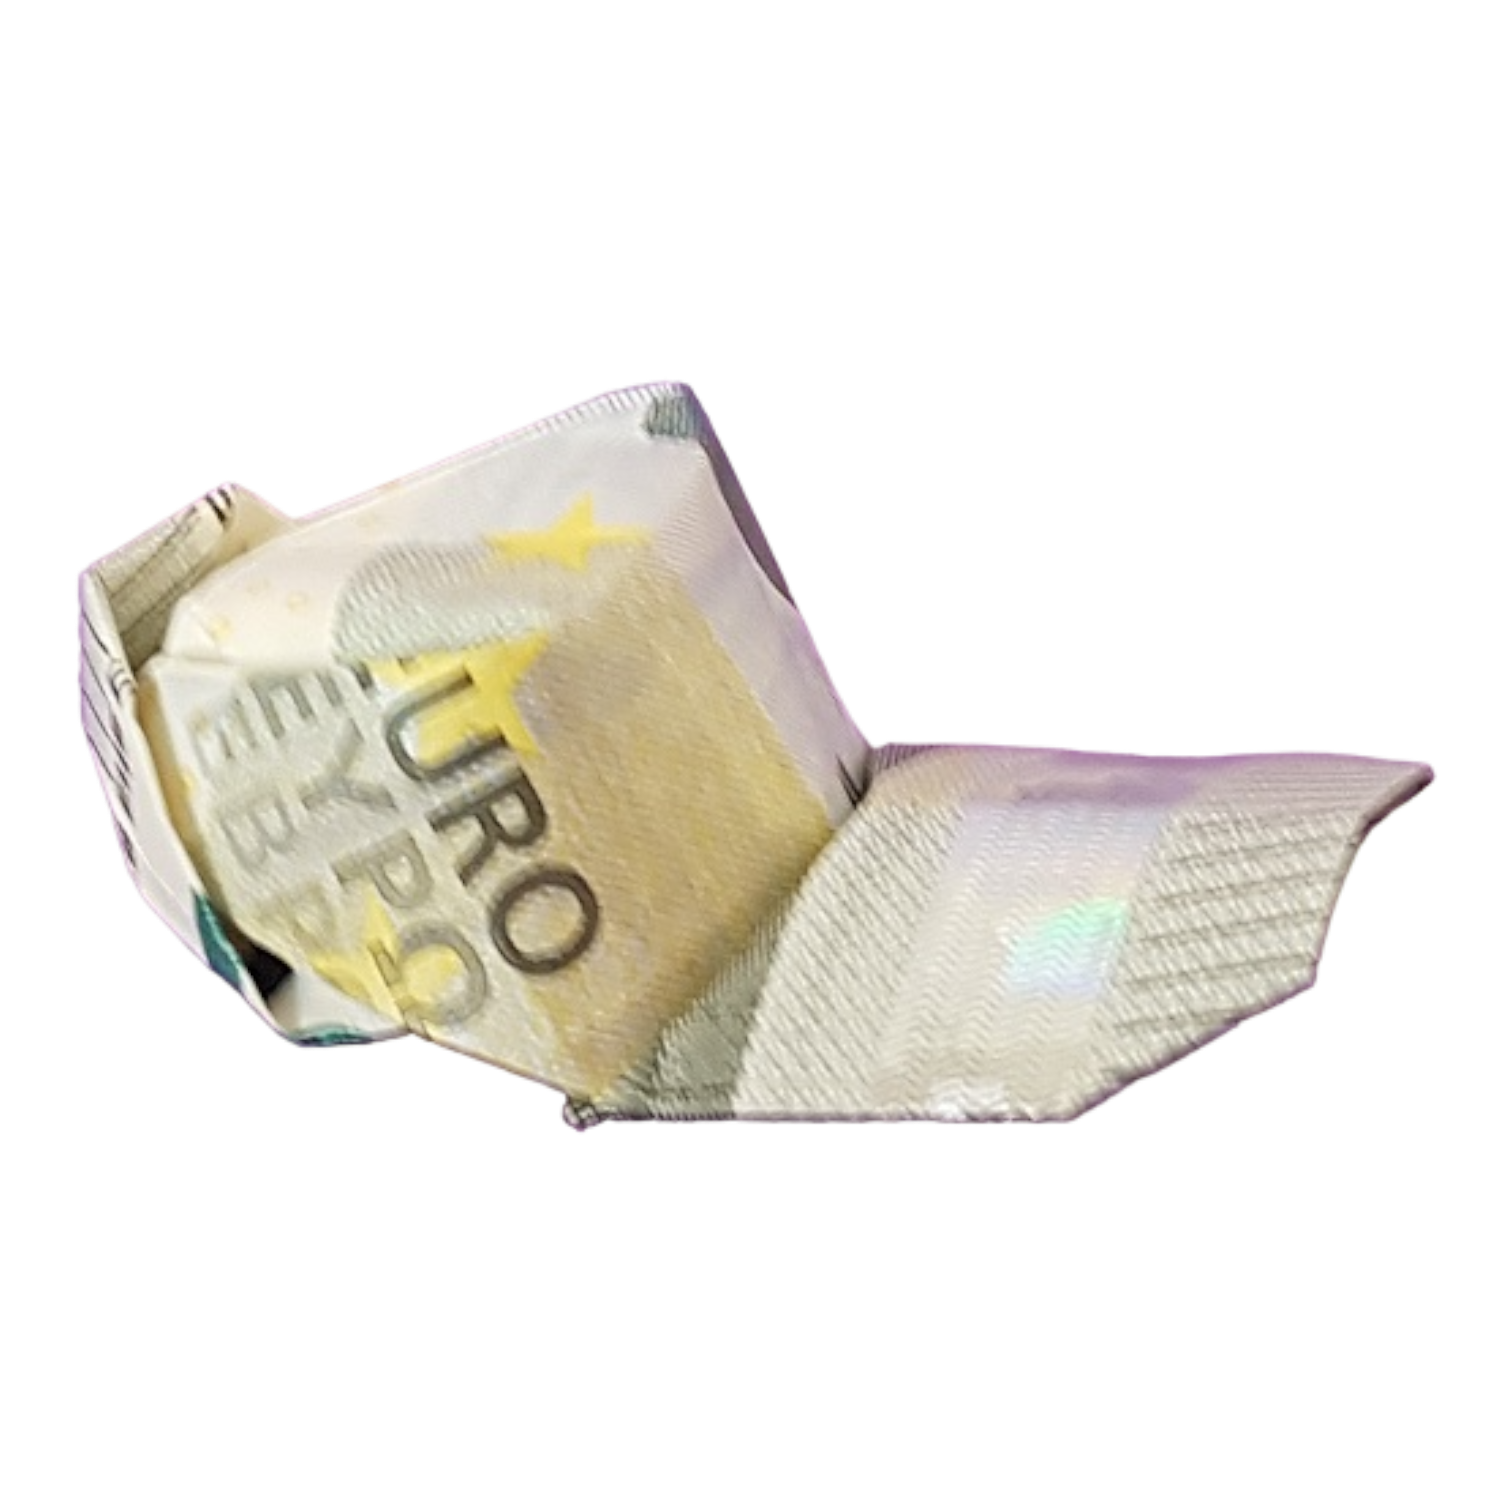 Origami Geldschein Basecap